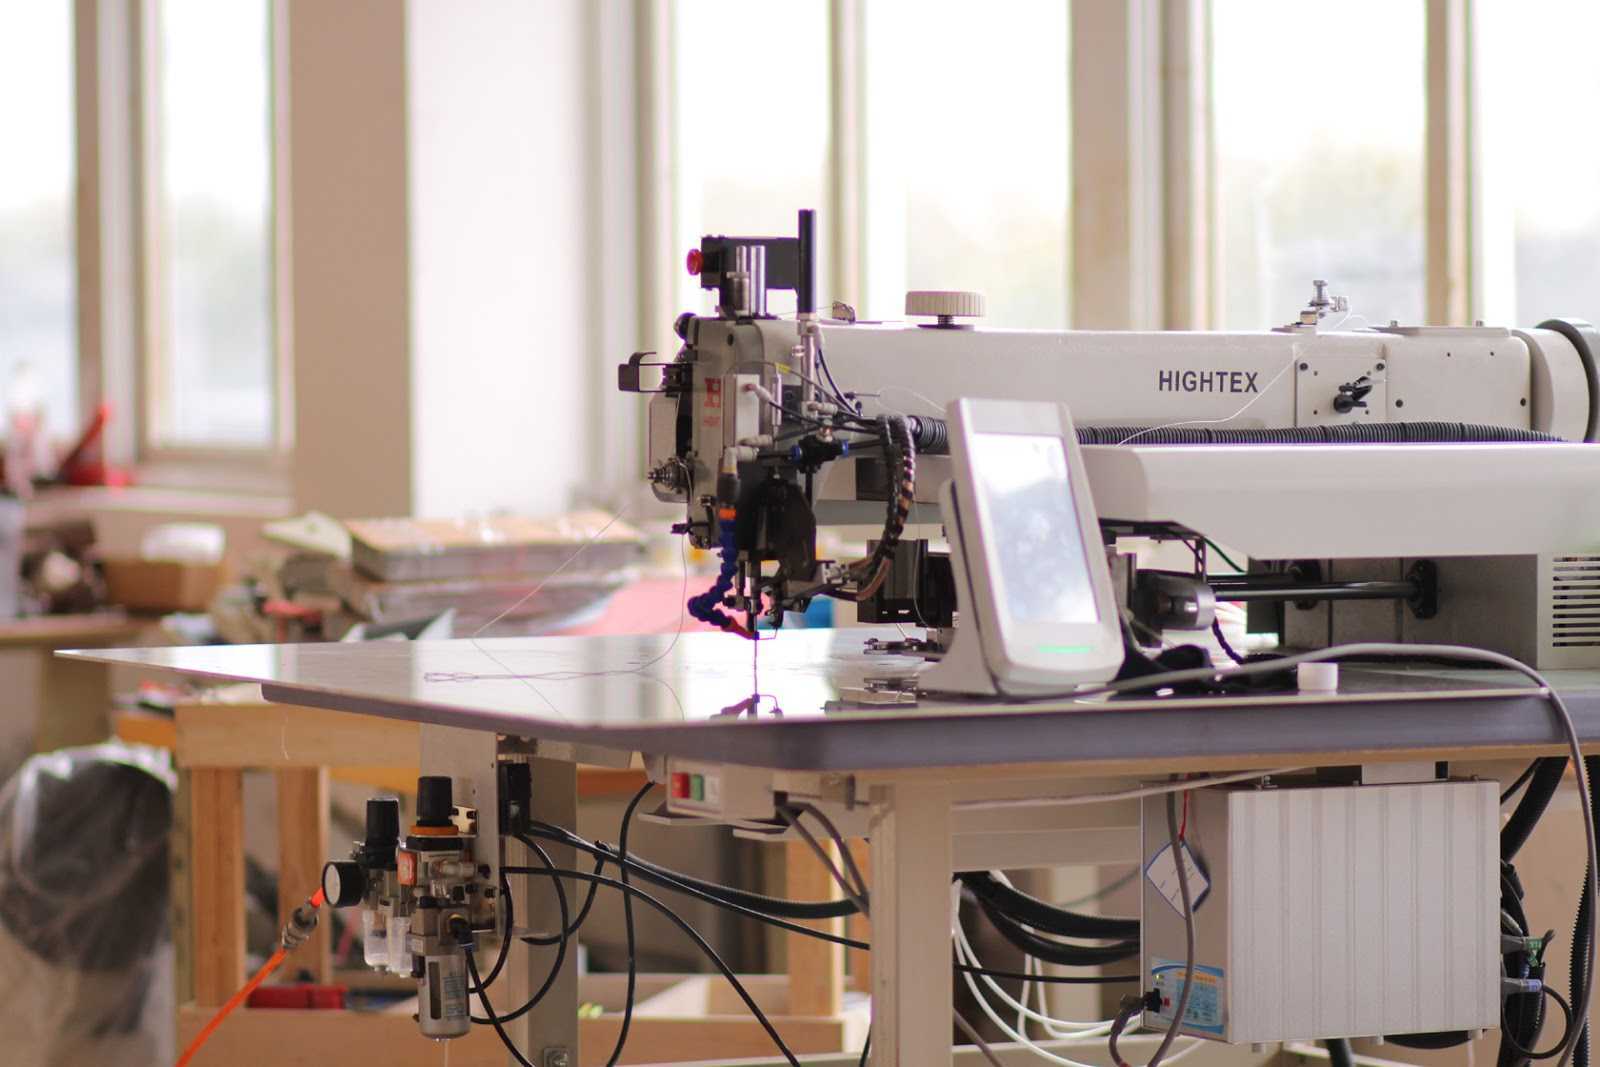 Изготовление швейного оборудования. Hightex 430hm. Швейное оборудование. Оборудование для швейного производства. Оборудование для швейного цеха.